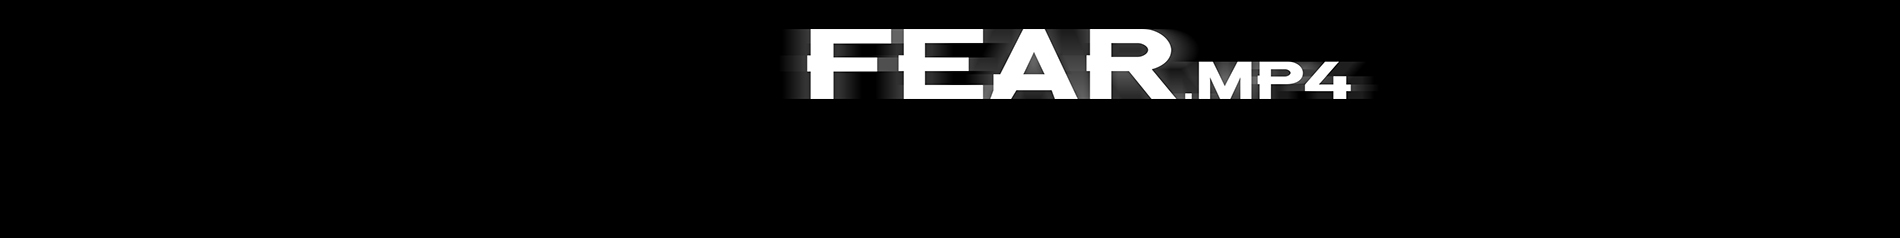 creator cover FEAR.mp4